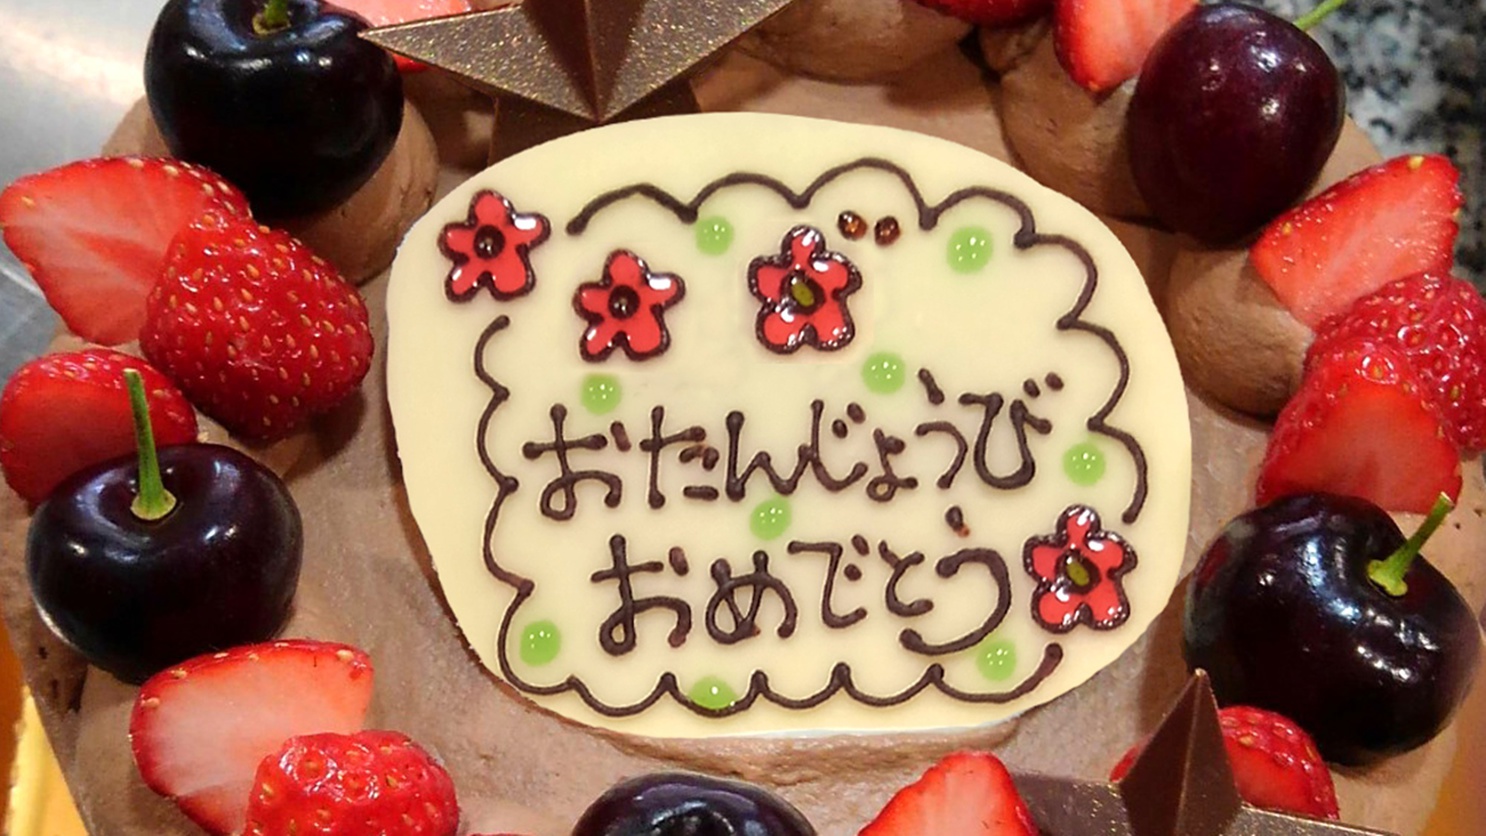 【記念日】地元で人気の名店「輪心」のケーキでお祝い♪お誕生日、ご結婚、還暦など特別な日に【お部屋食】